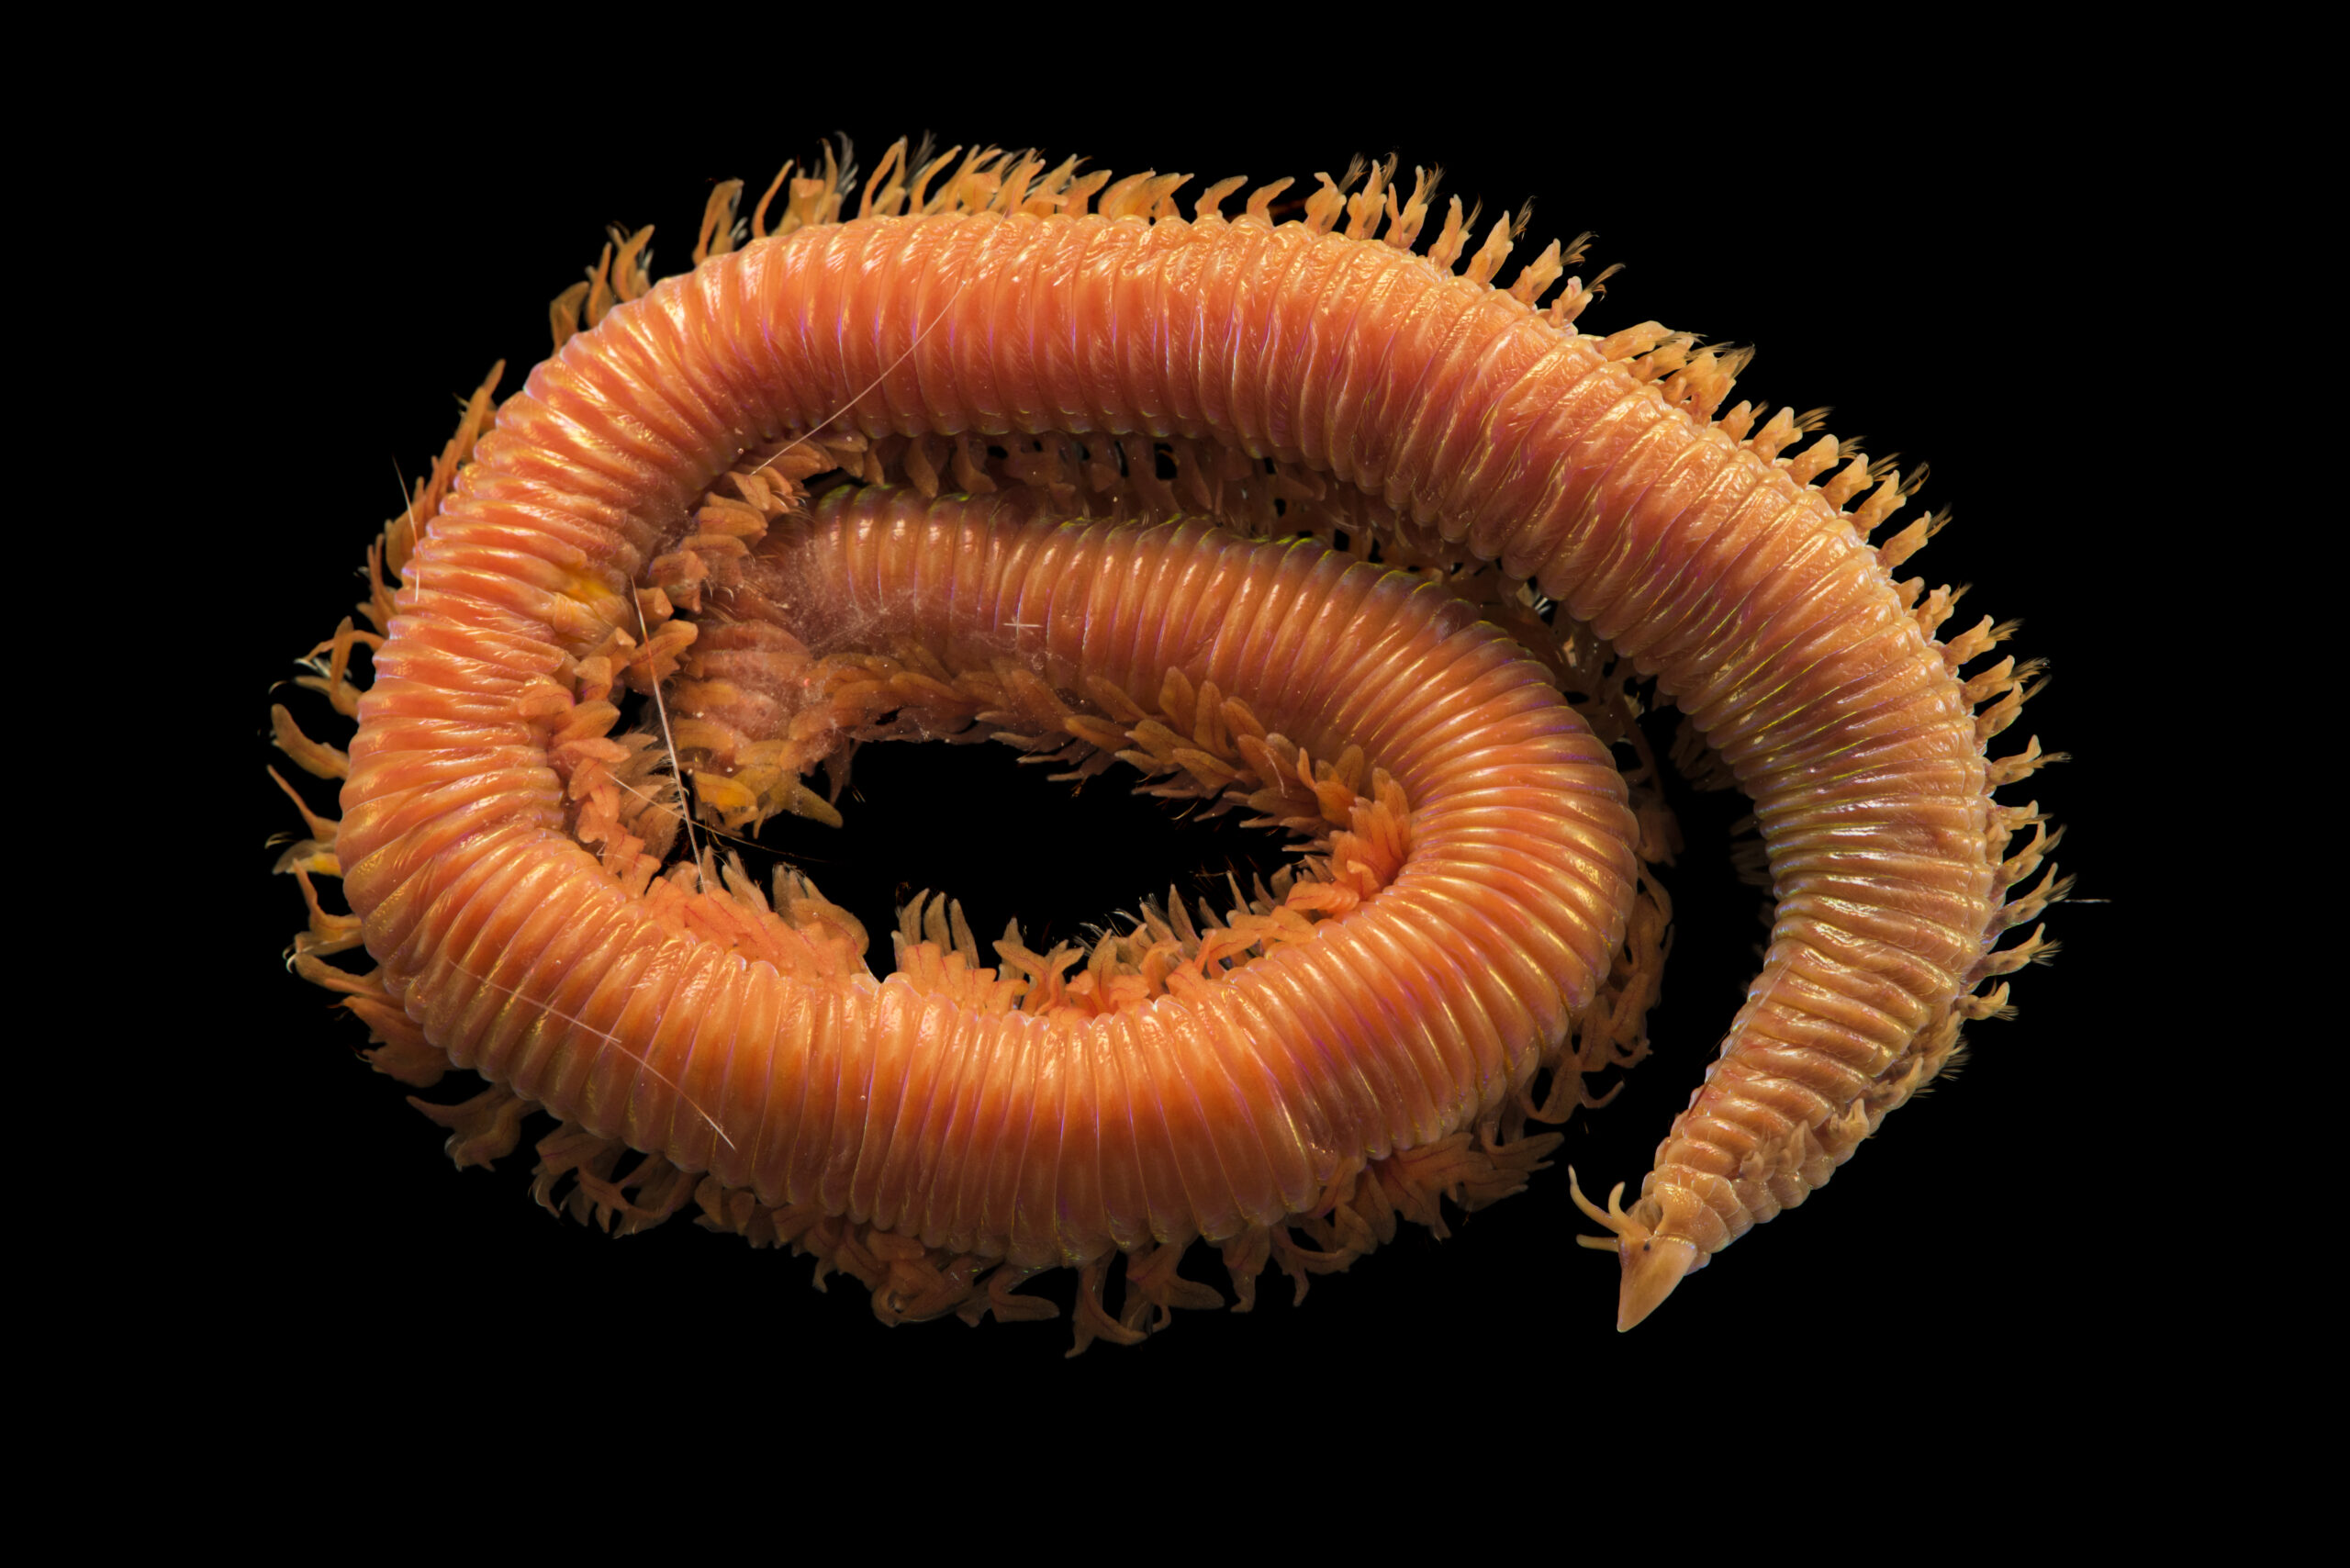 Crab trap worm (Lysarete brasiliensis)